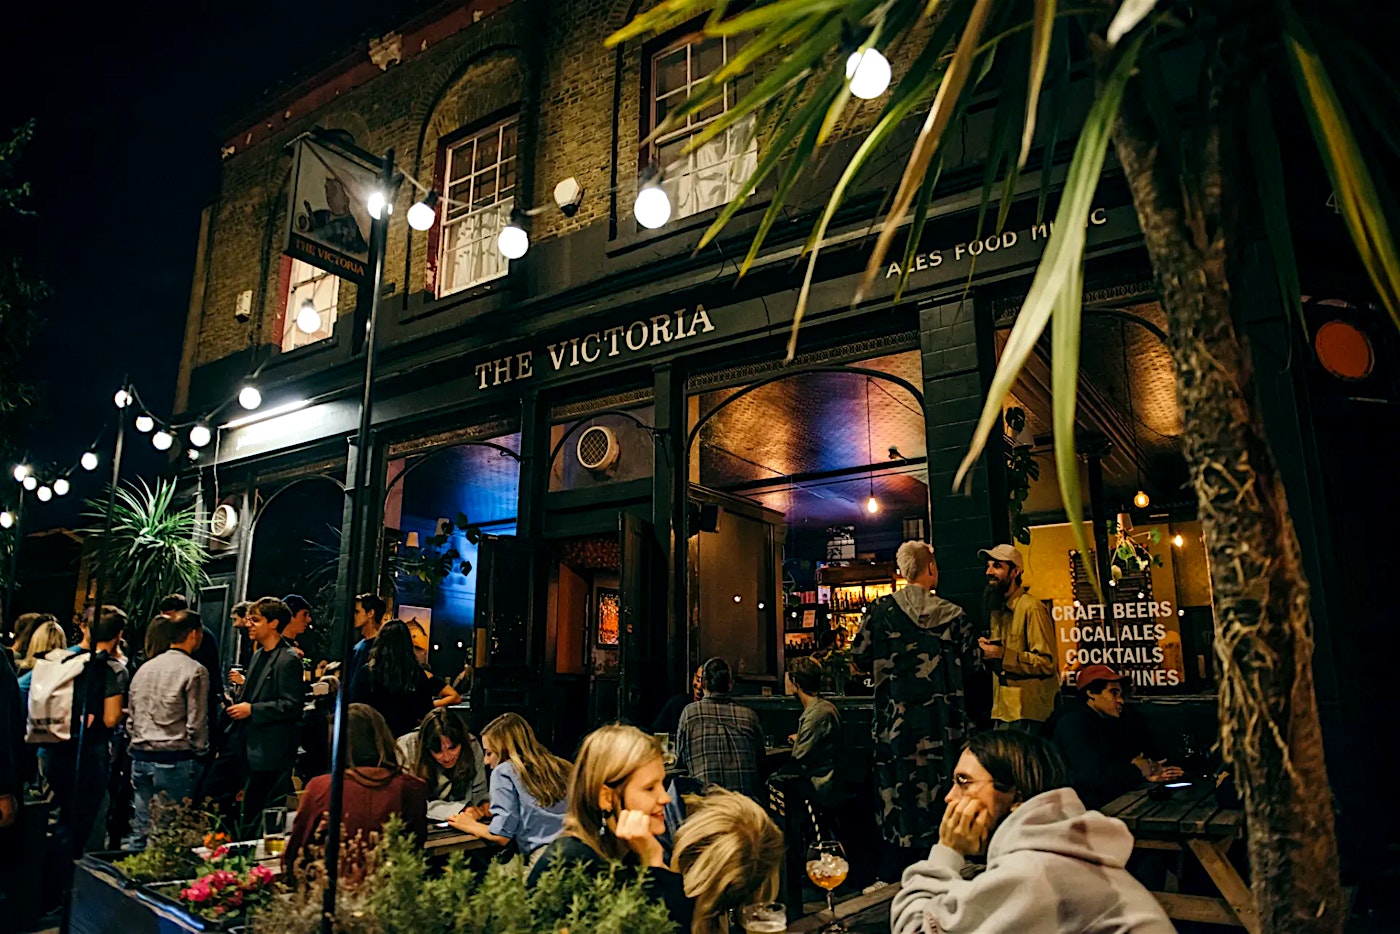 exterior of the victoria pub in dalston in london